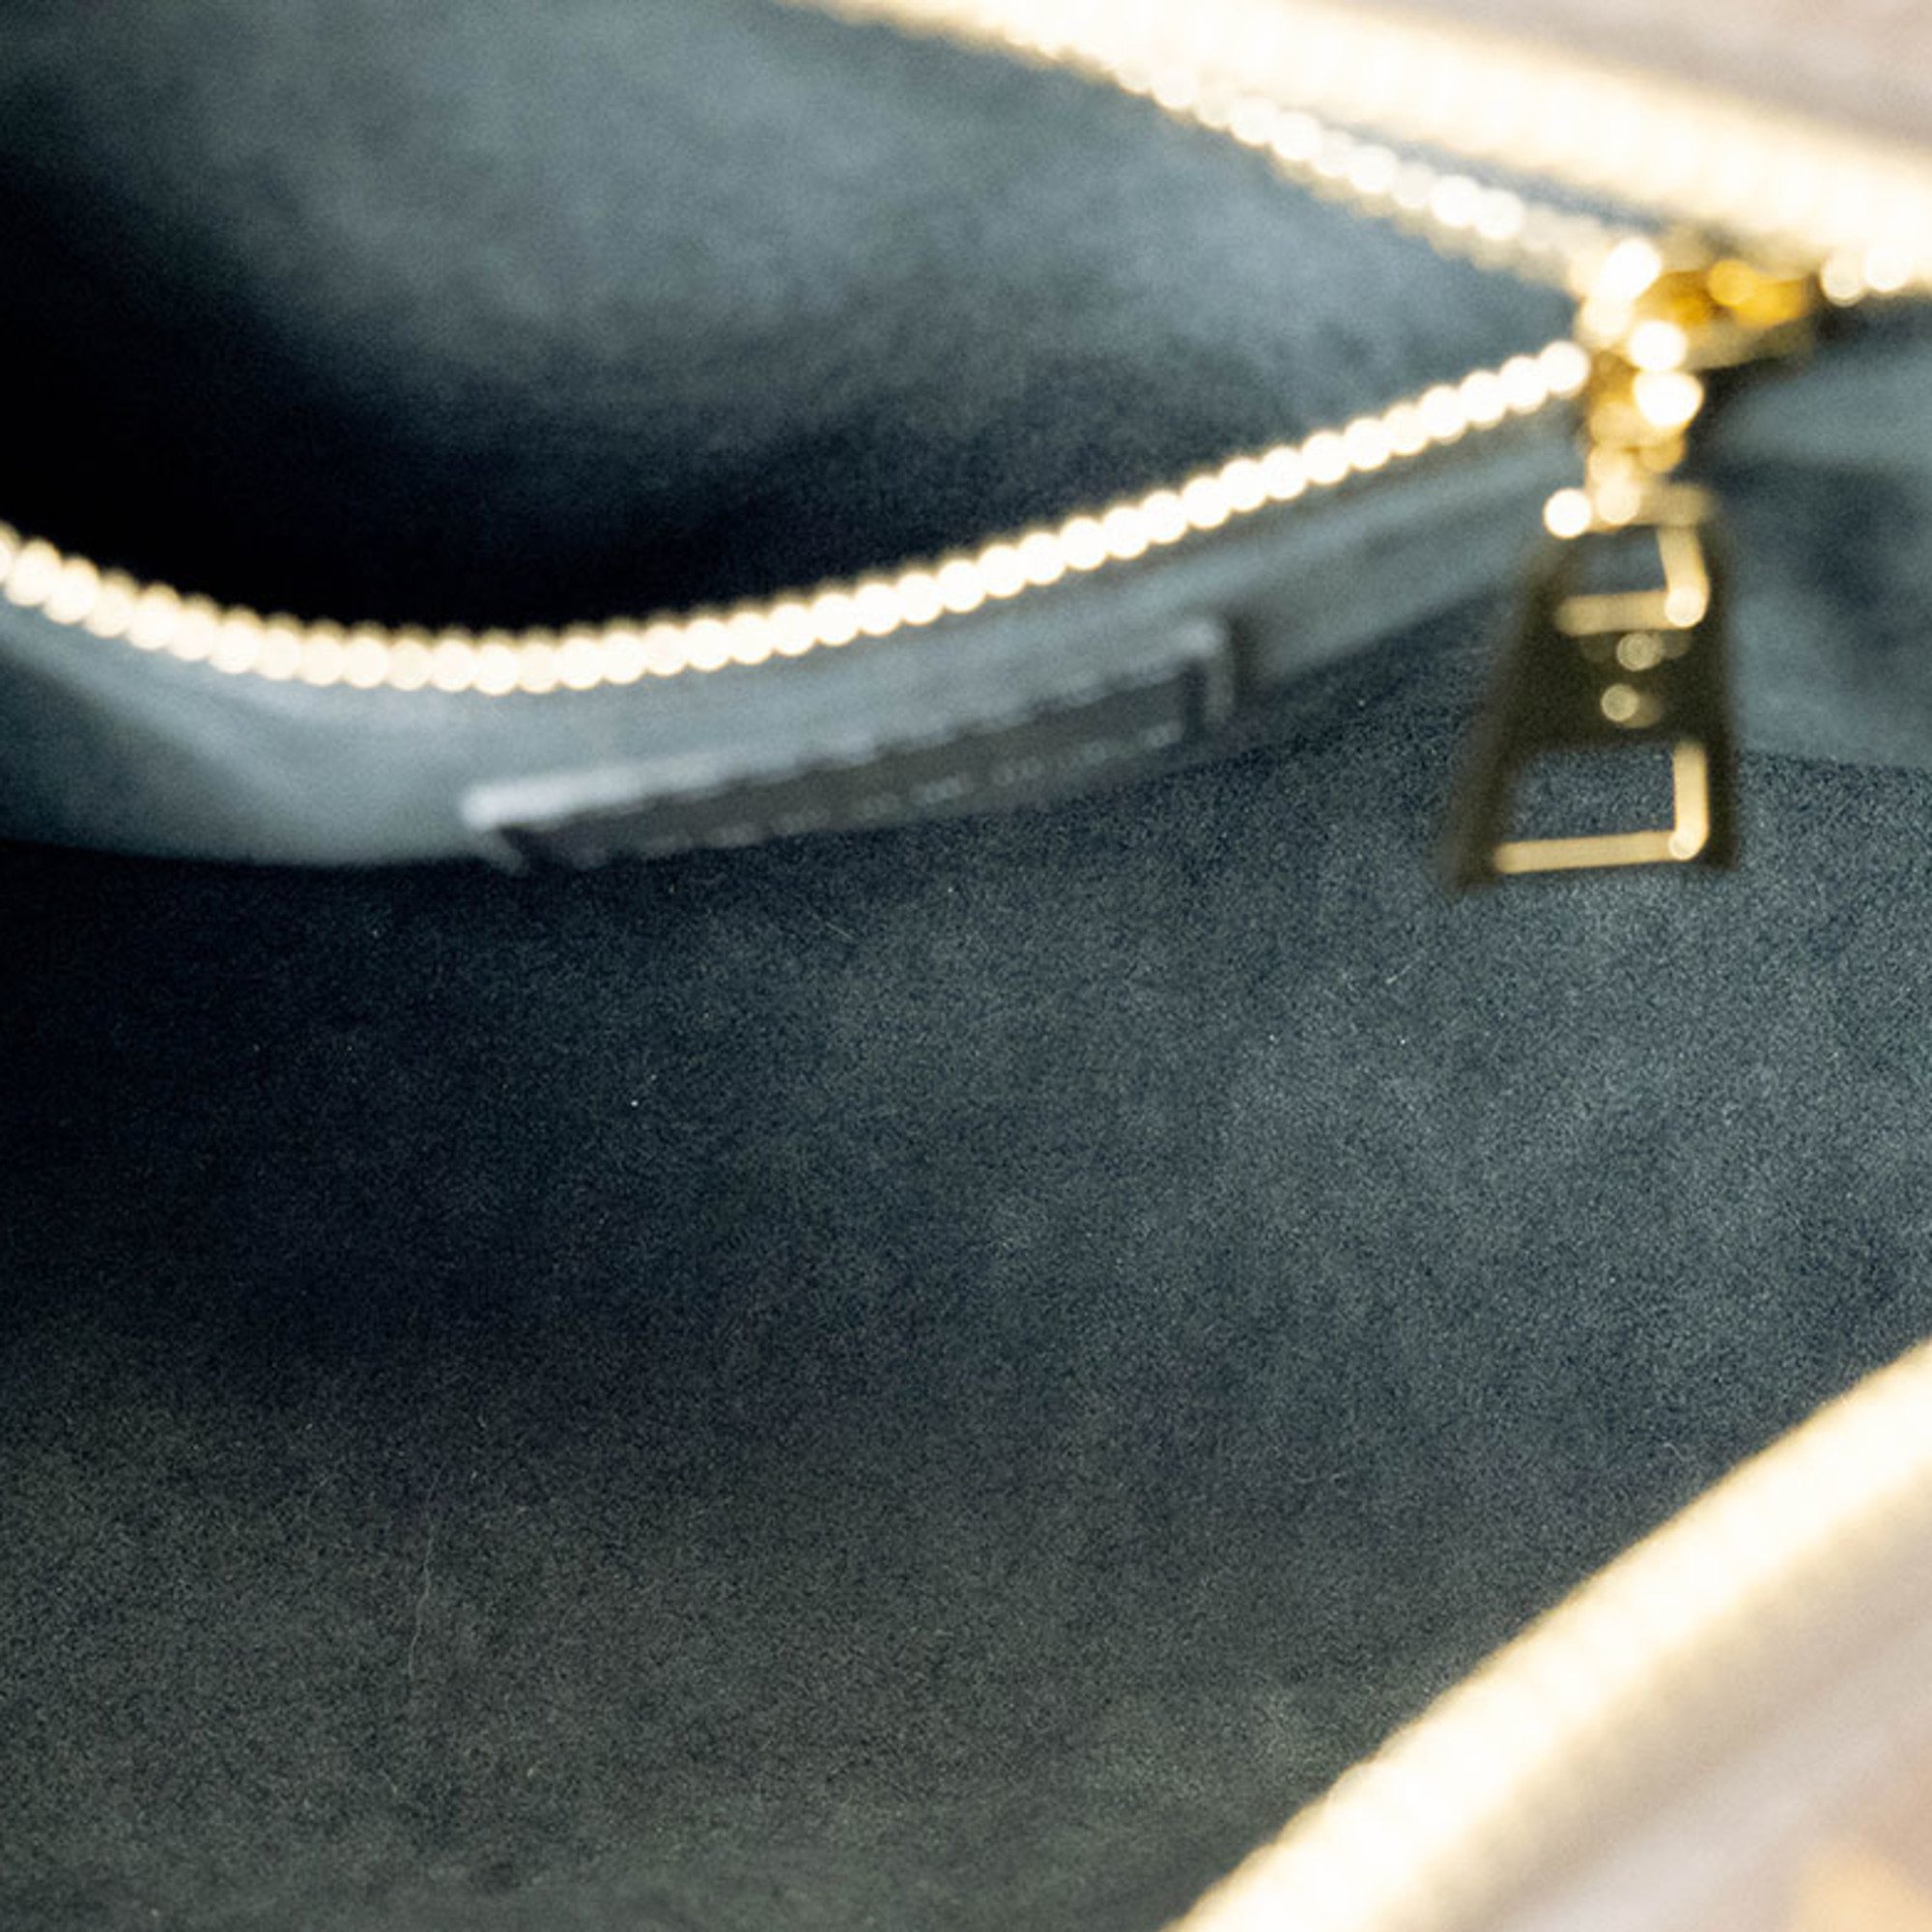 Louis Vuitton Petite Malle Souple Handbag Monogram M41108 Women's 2-way Shoulder Bag LOUIS VUITTON